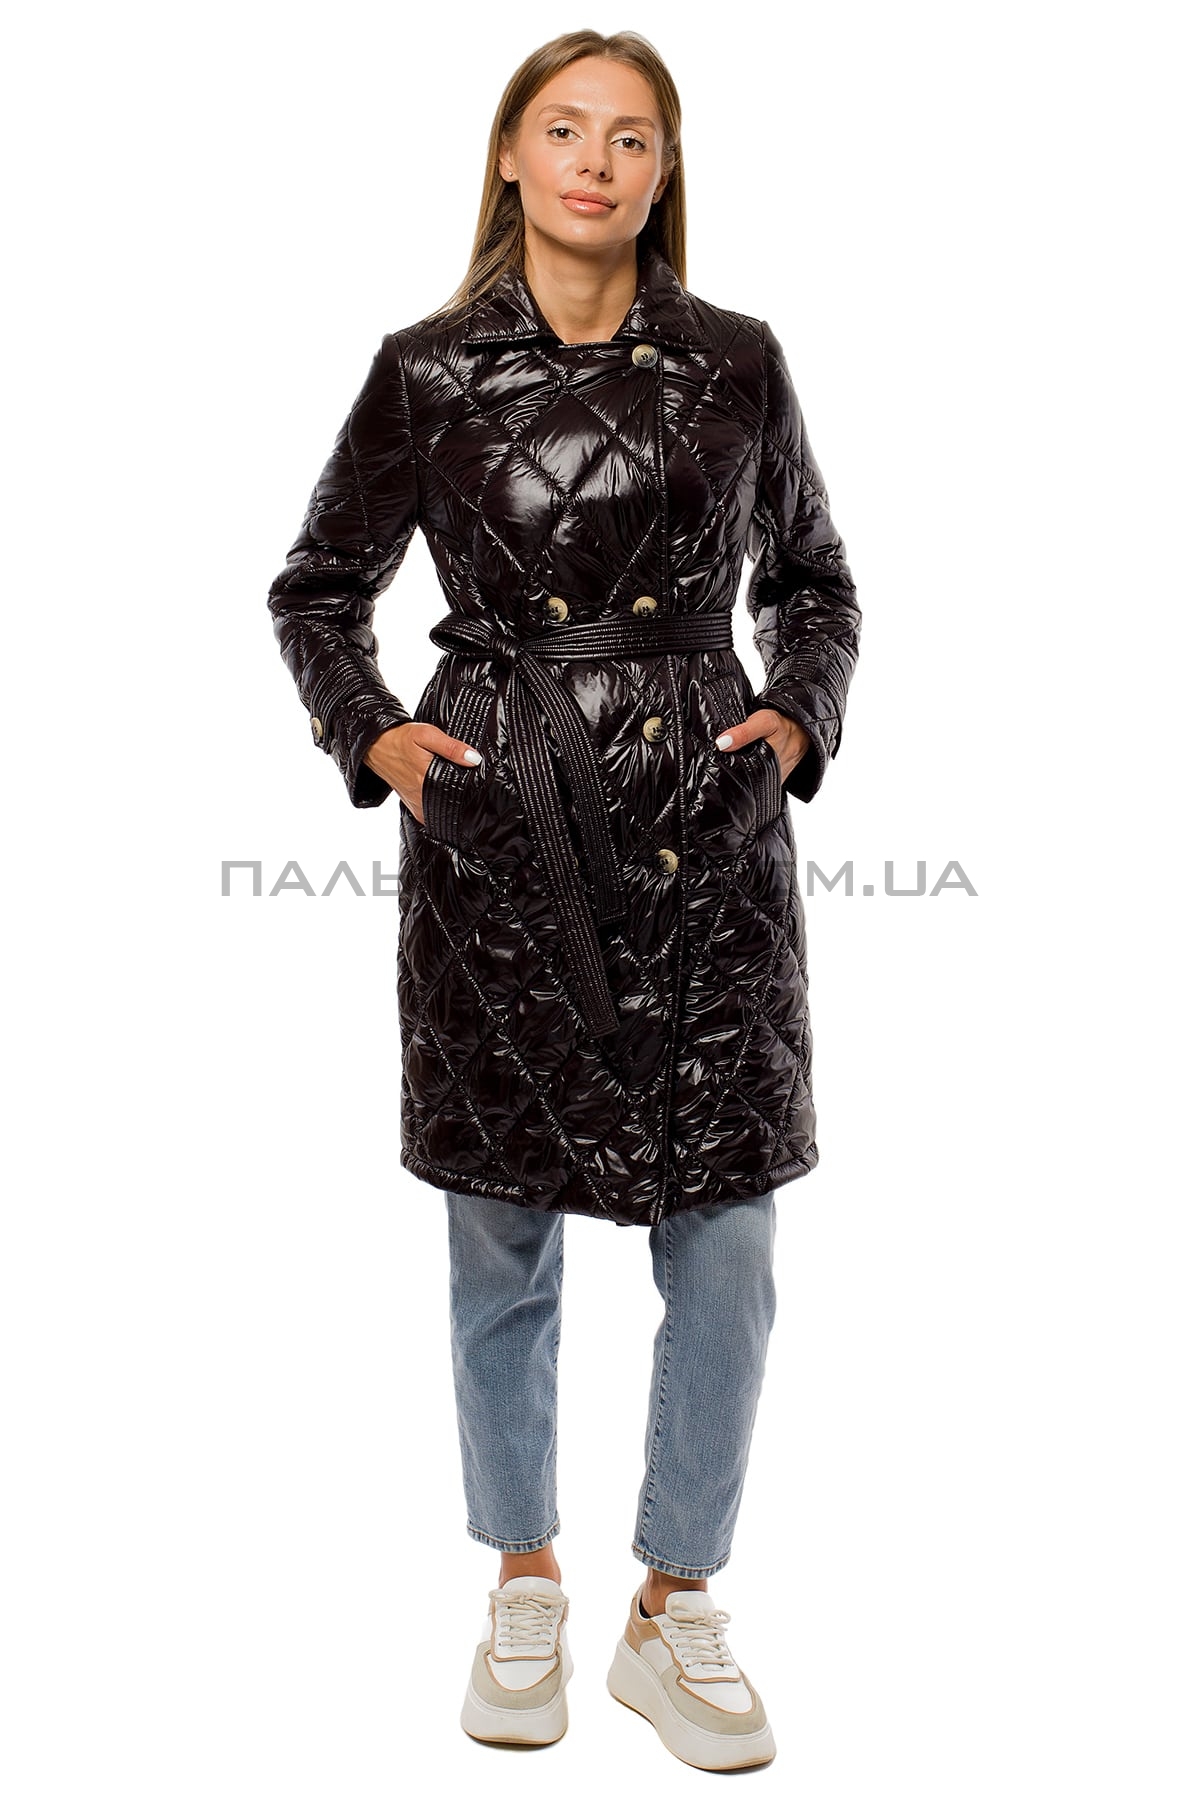  Жіноча куртка чорна перламутрова з поясом